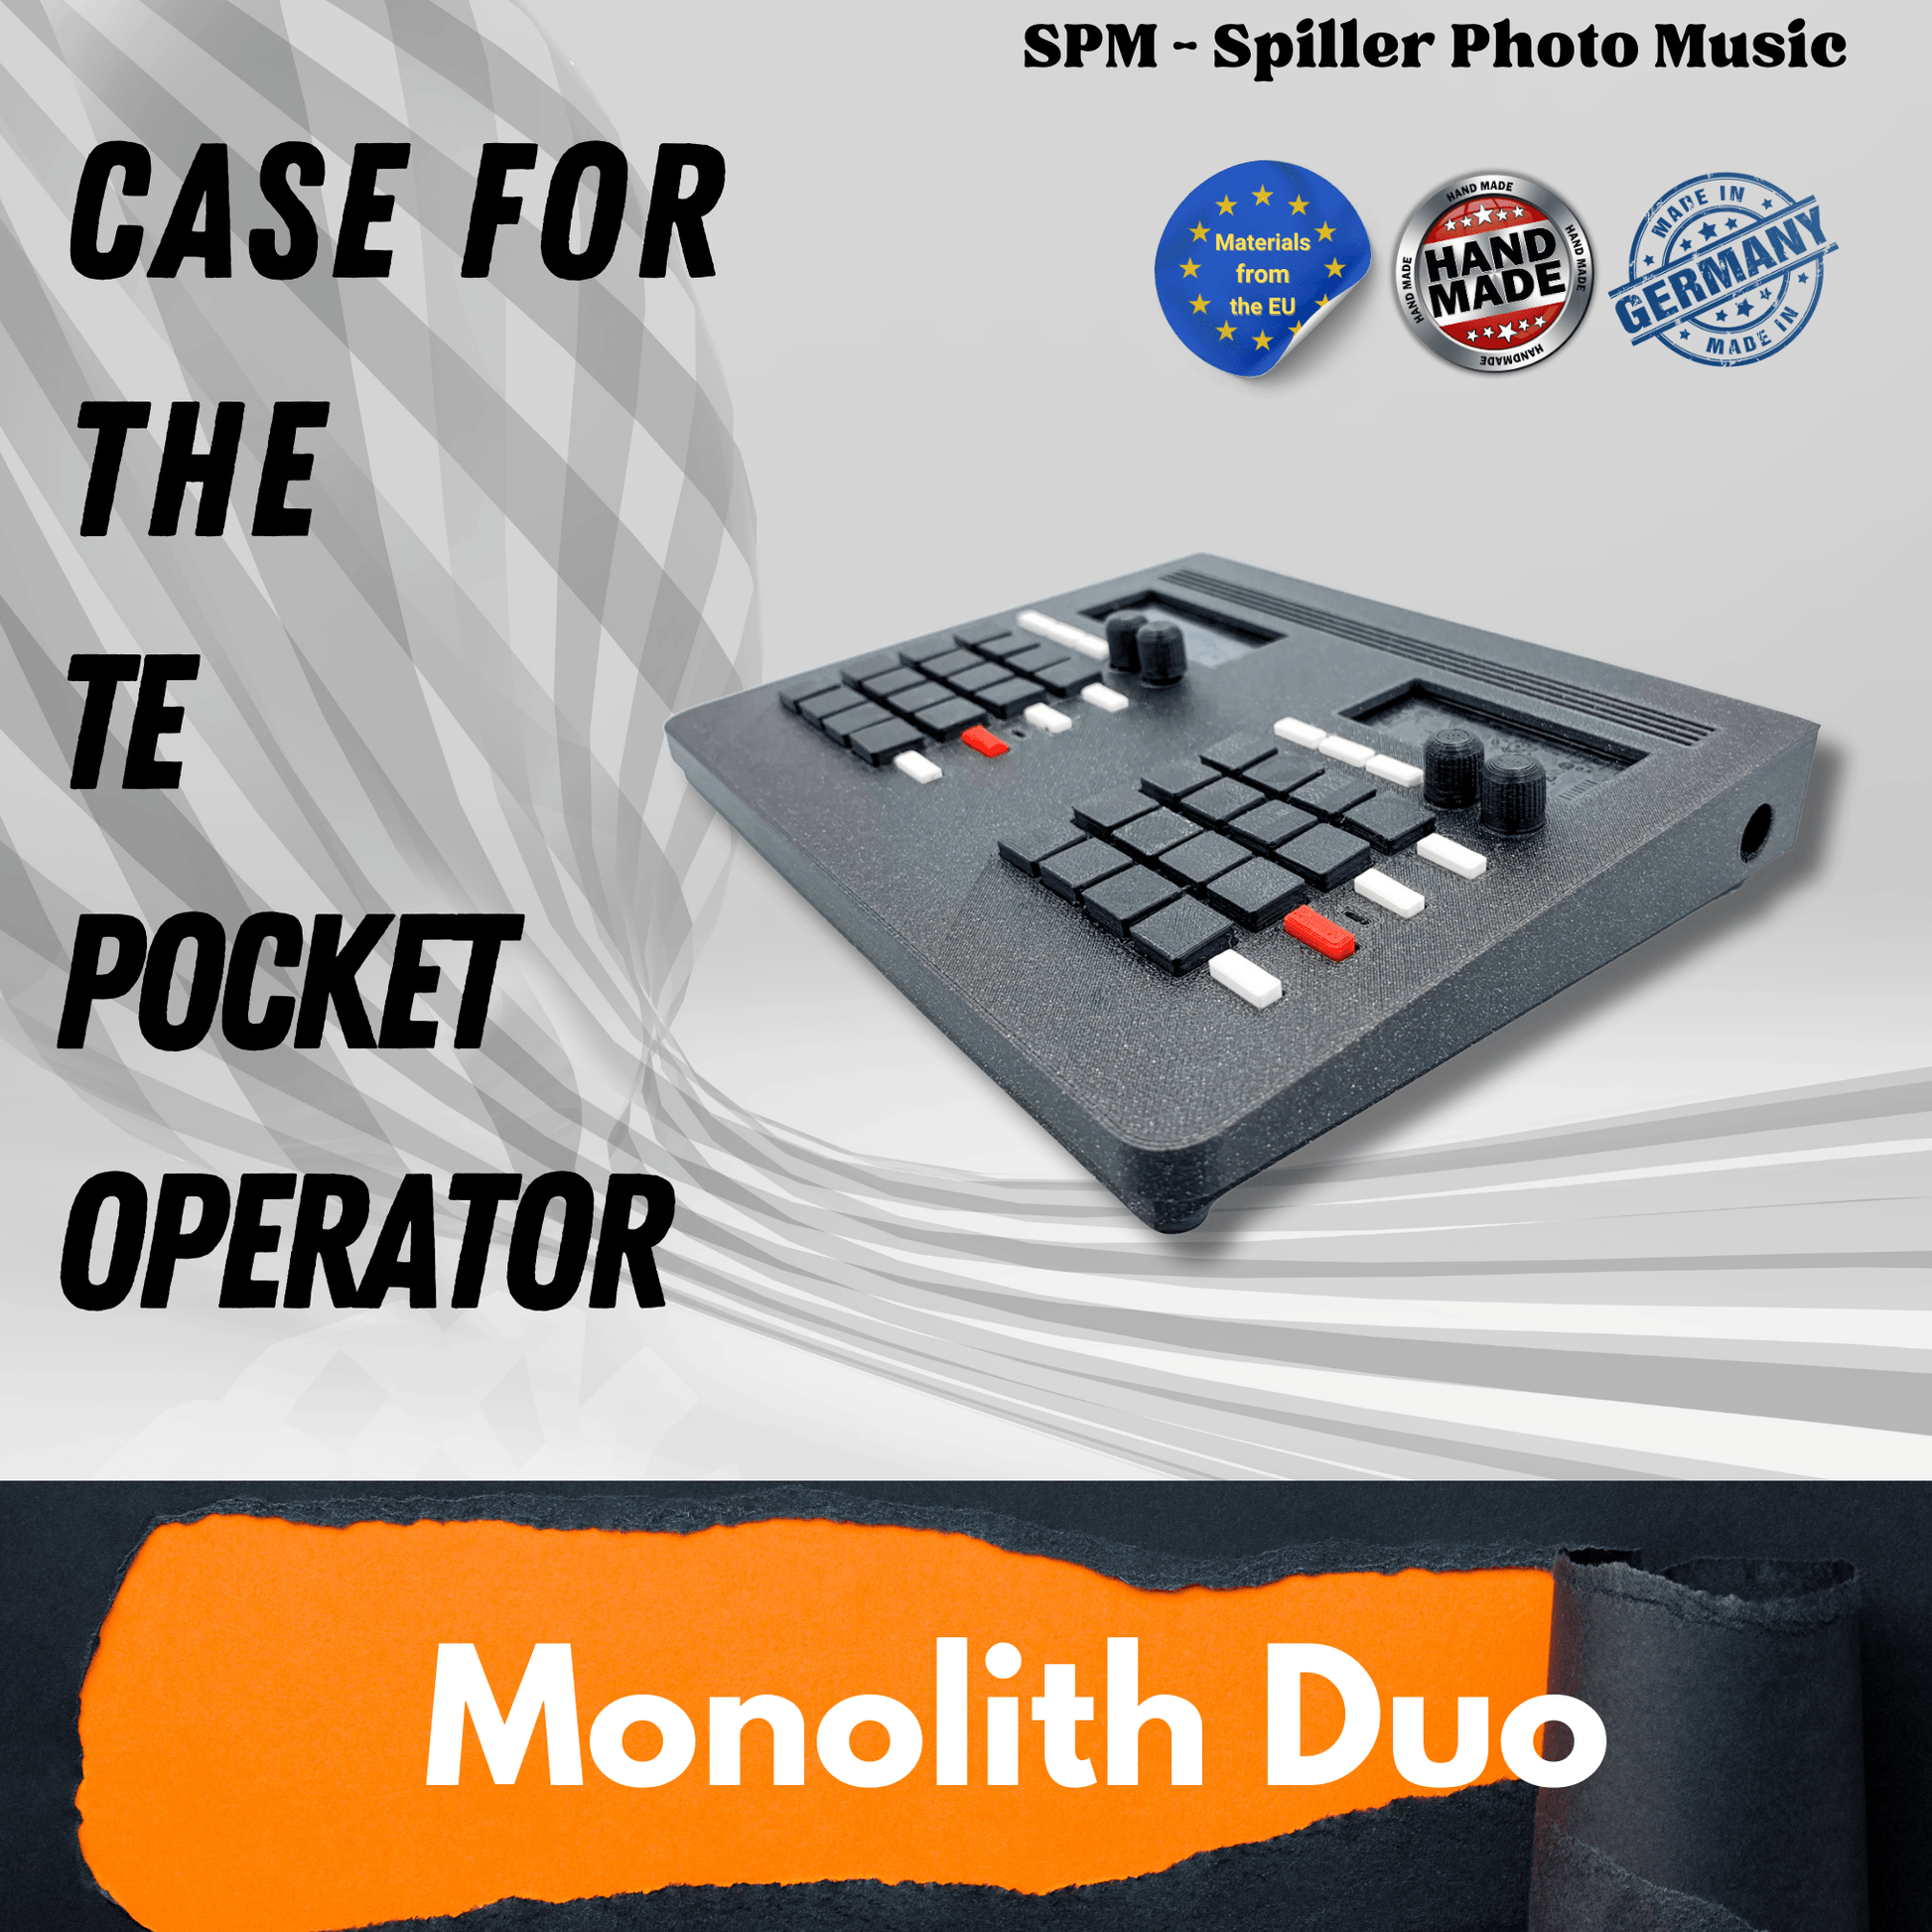 Monolith DUO - 3D gedrucktes Gehäuse für 2 TE Pocket Operators - SPM - Spillerphoto & Music